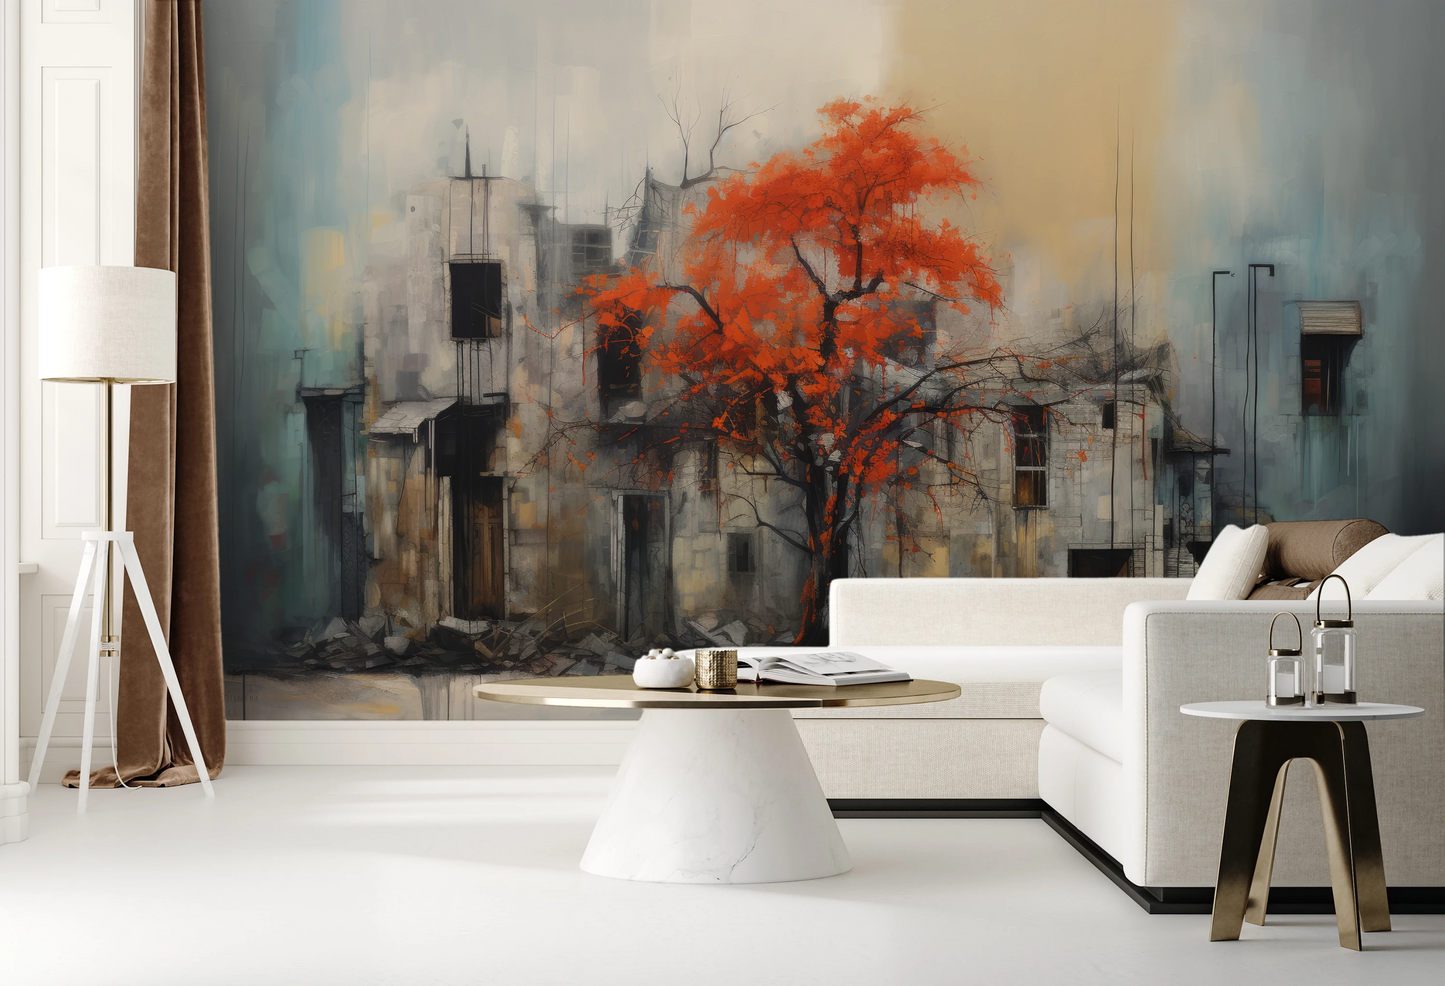 Fototapeta malowana o nazwie Autumn's Contrast pokazana w aranżacji wnętrza.